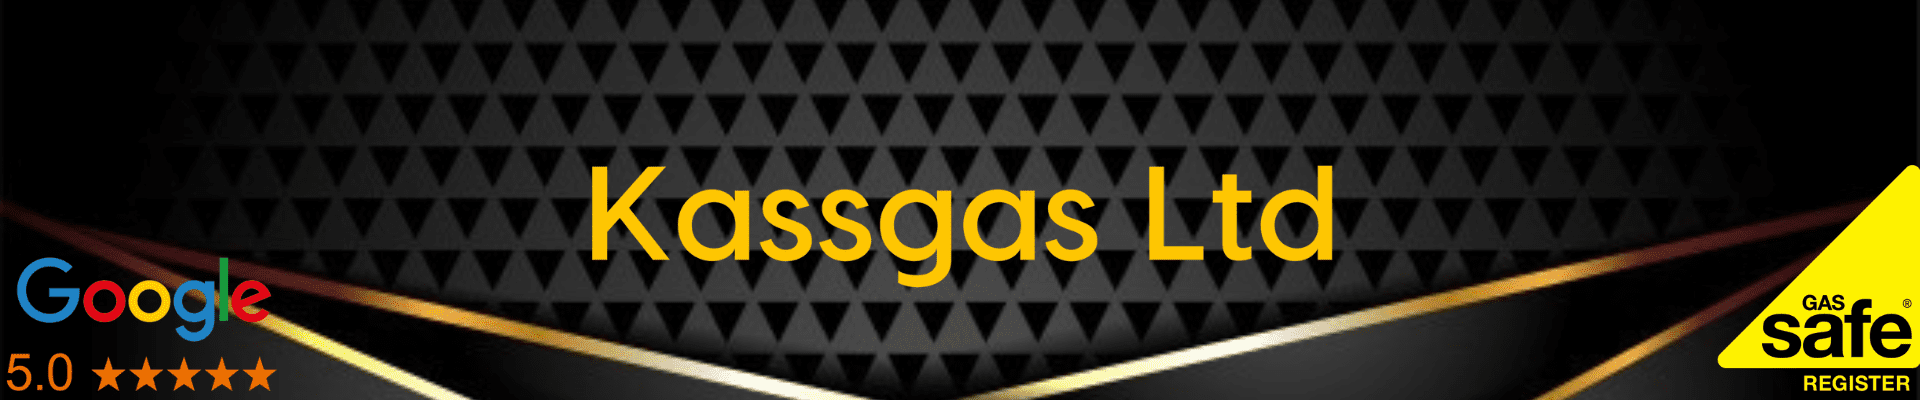 Kassgas Limited